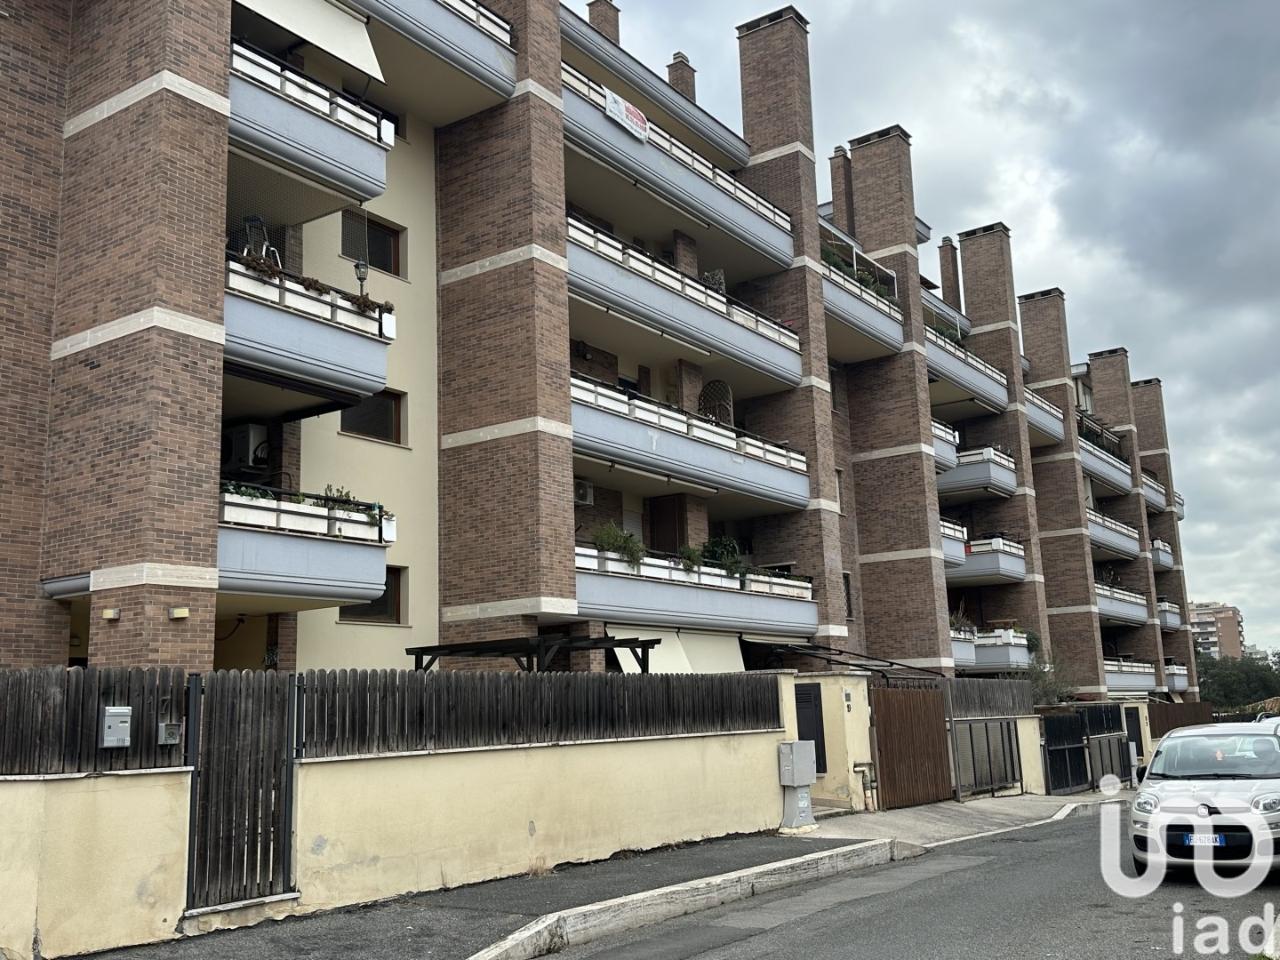 Appartamento in vendita a Pomezia